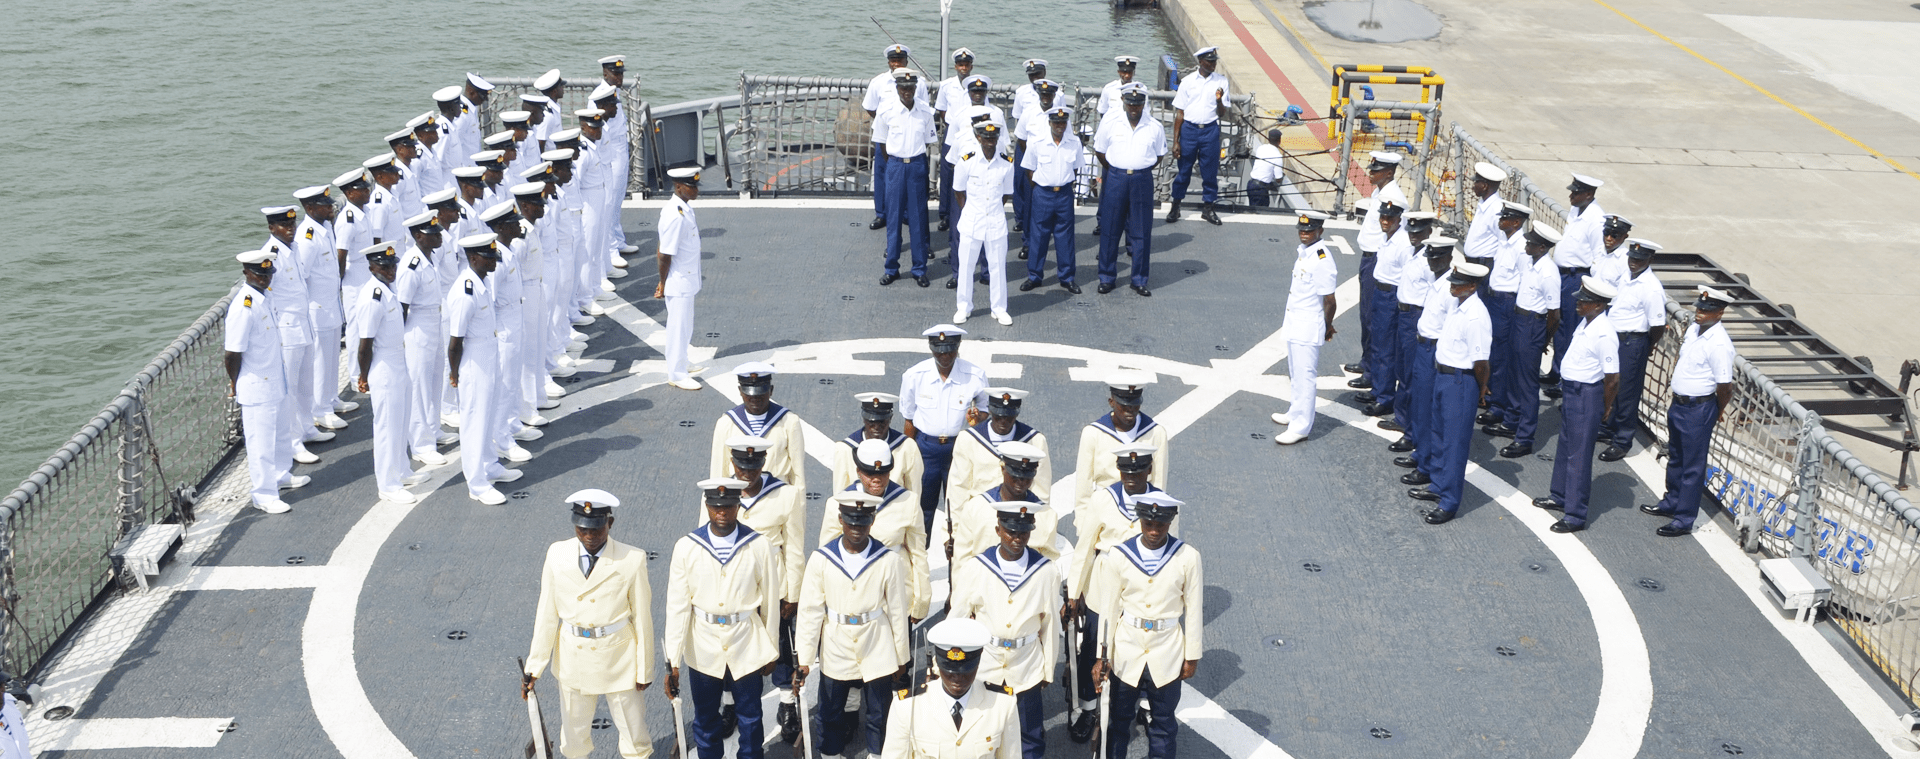 berpr-fen-sie-das-ergebnis-des-dssc-eignungstests-der-nigerianischen-marine-2020-aktuelle